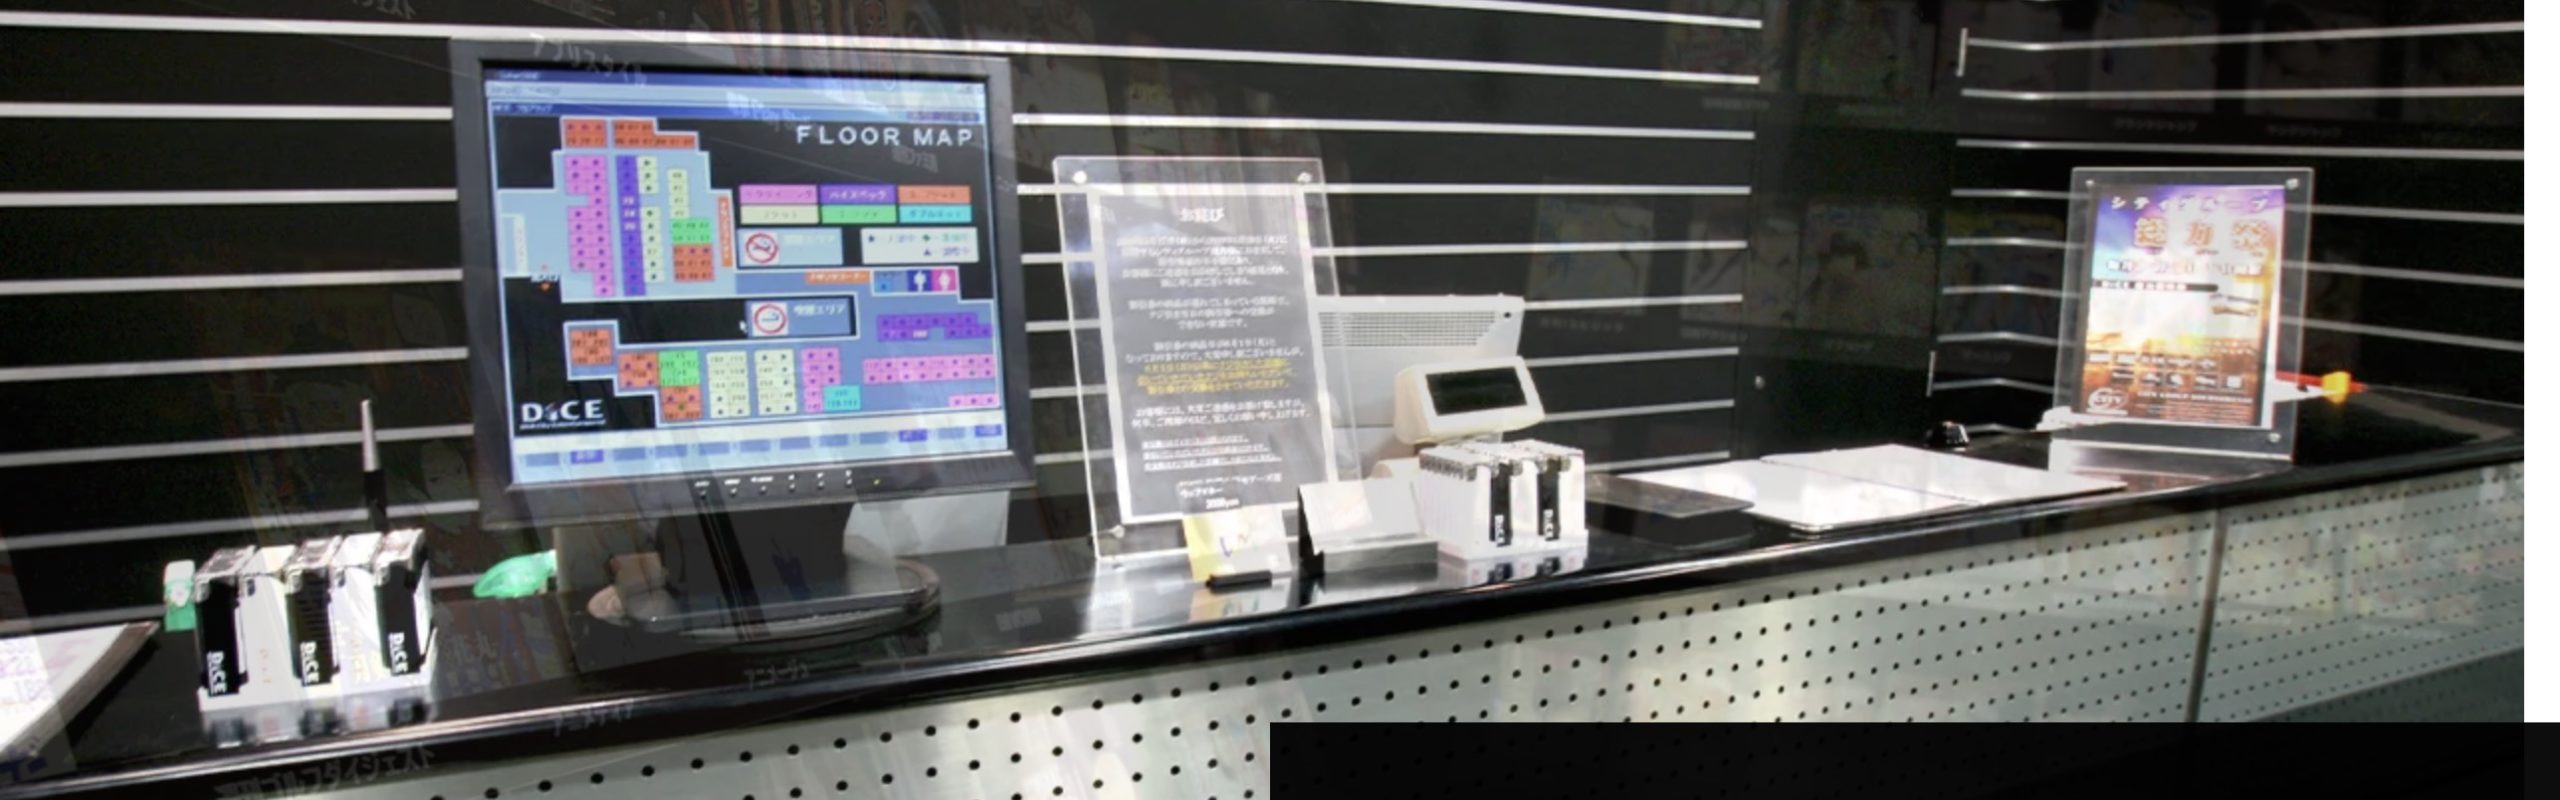 町田駅近くのネットカフェ 漫画喫茶6店舗を比較 料金が安い店はどこ Netcafeism ネットカフェイズム